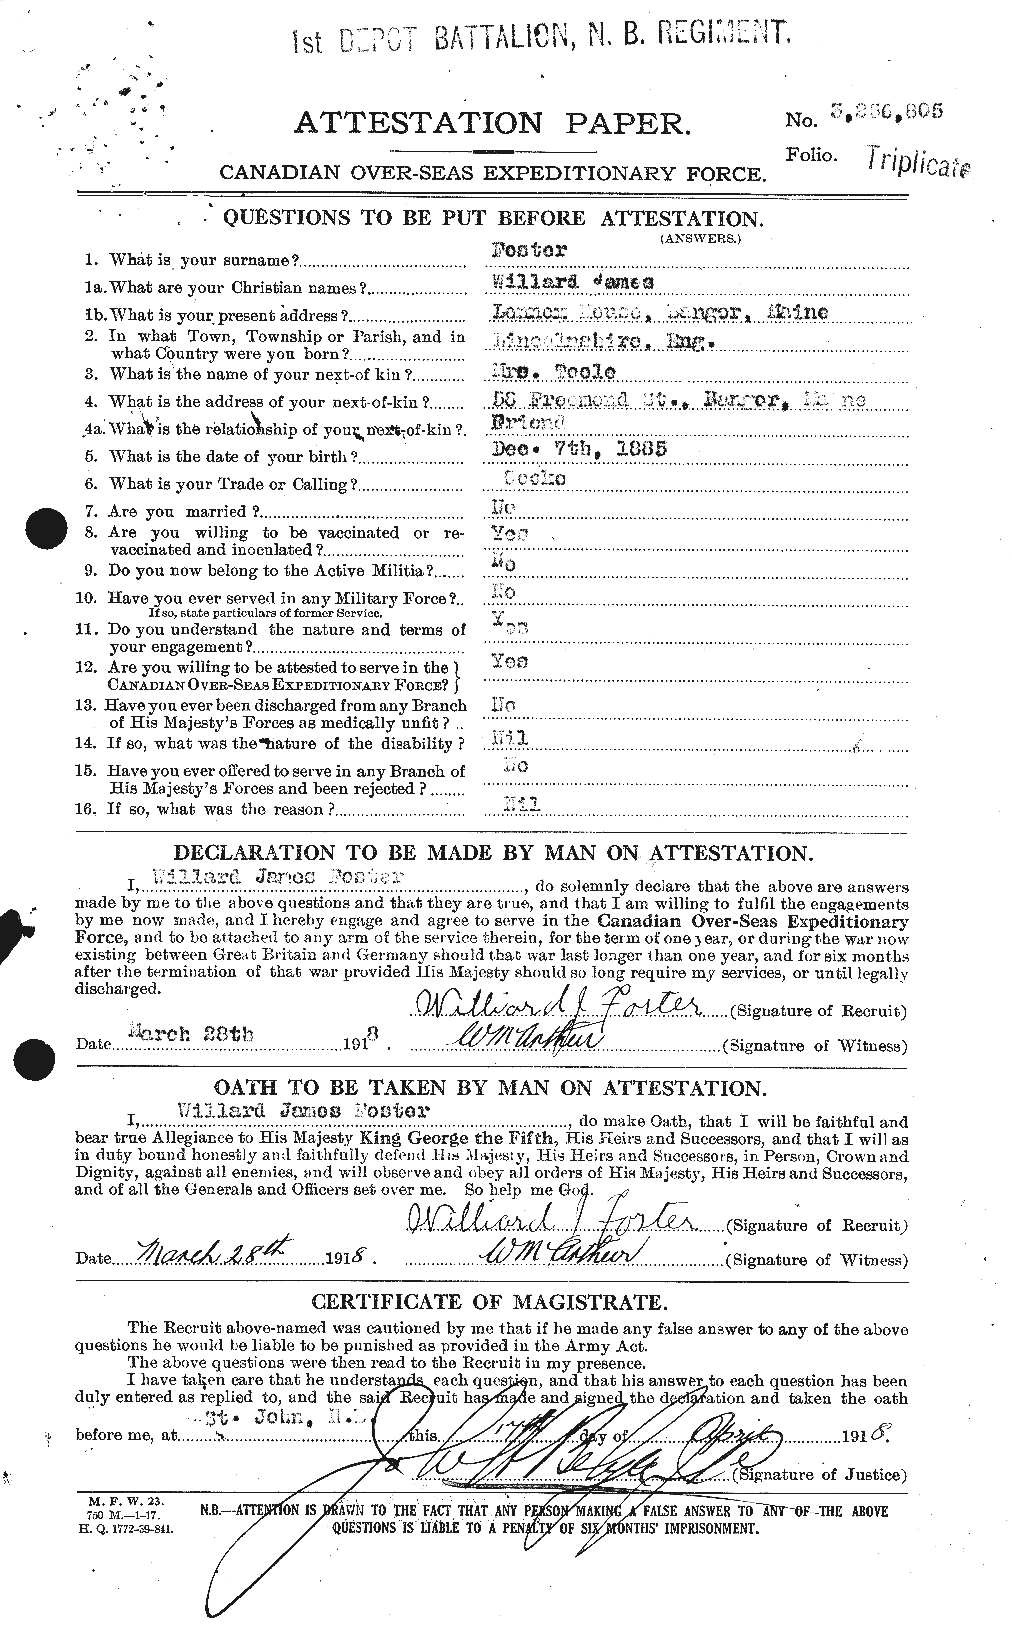 Dossiers du Personnel de la Première Guerre mondiale - CEC 335270a